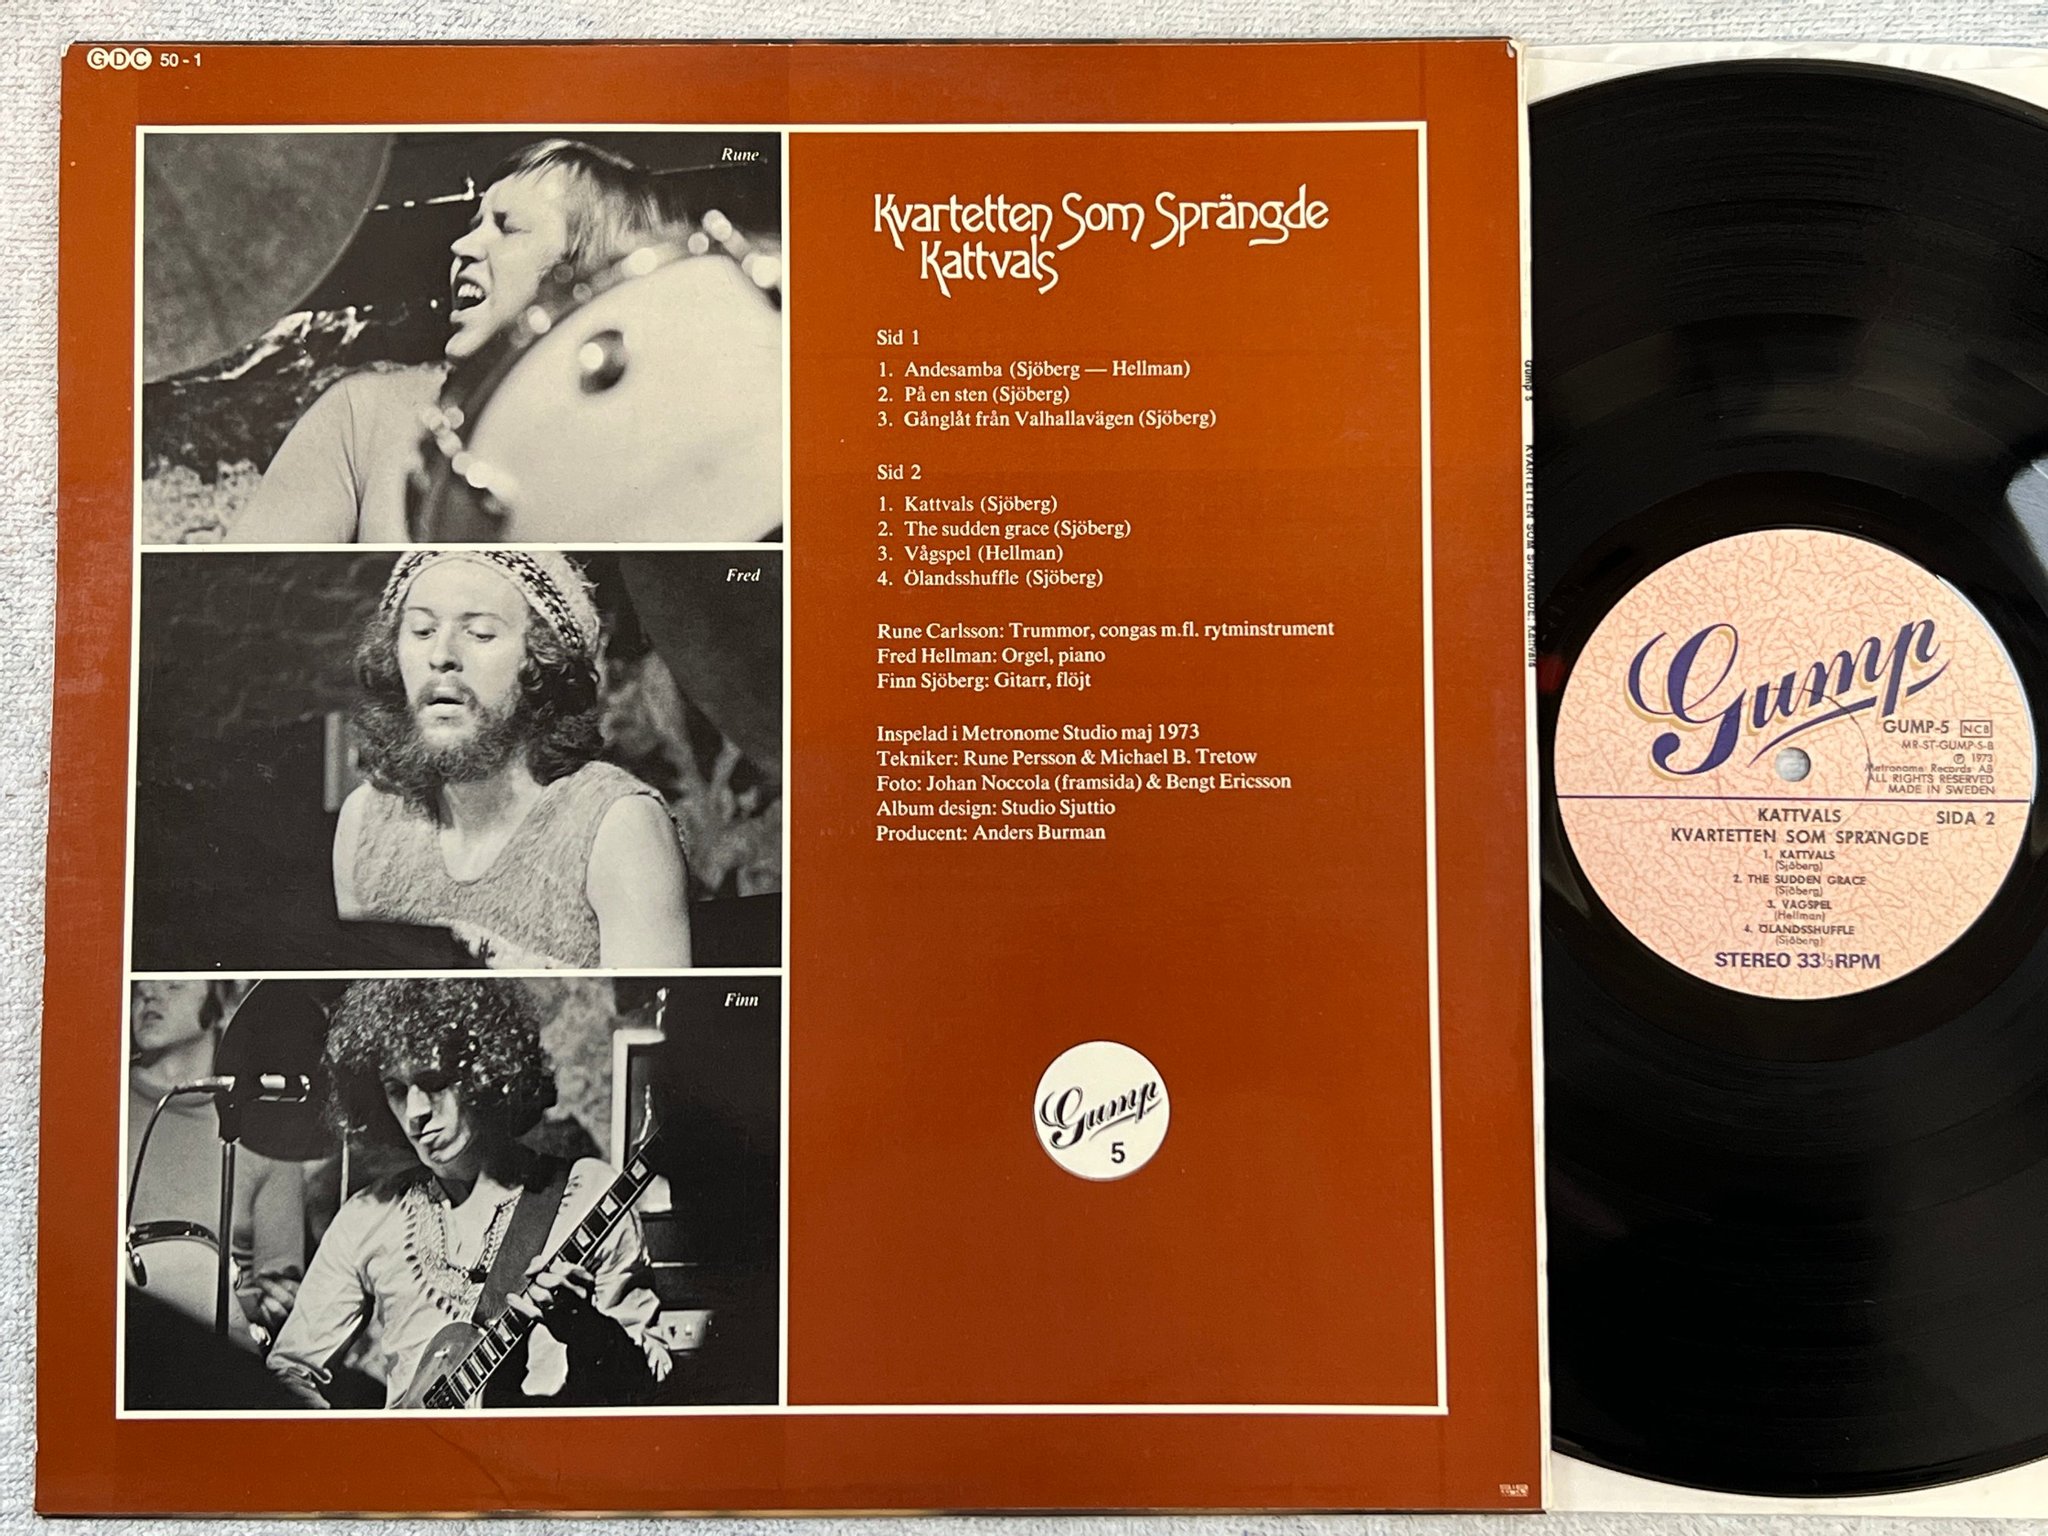 Omslagsbild för skivan KVARTETTEN SOM SPRÄNGDE Kattvals LP -73 Swe GUMP-5 rare GREAT ALBUM ! !